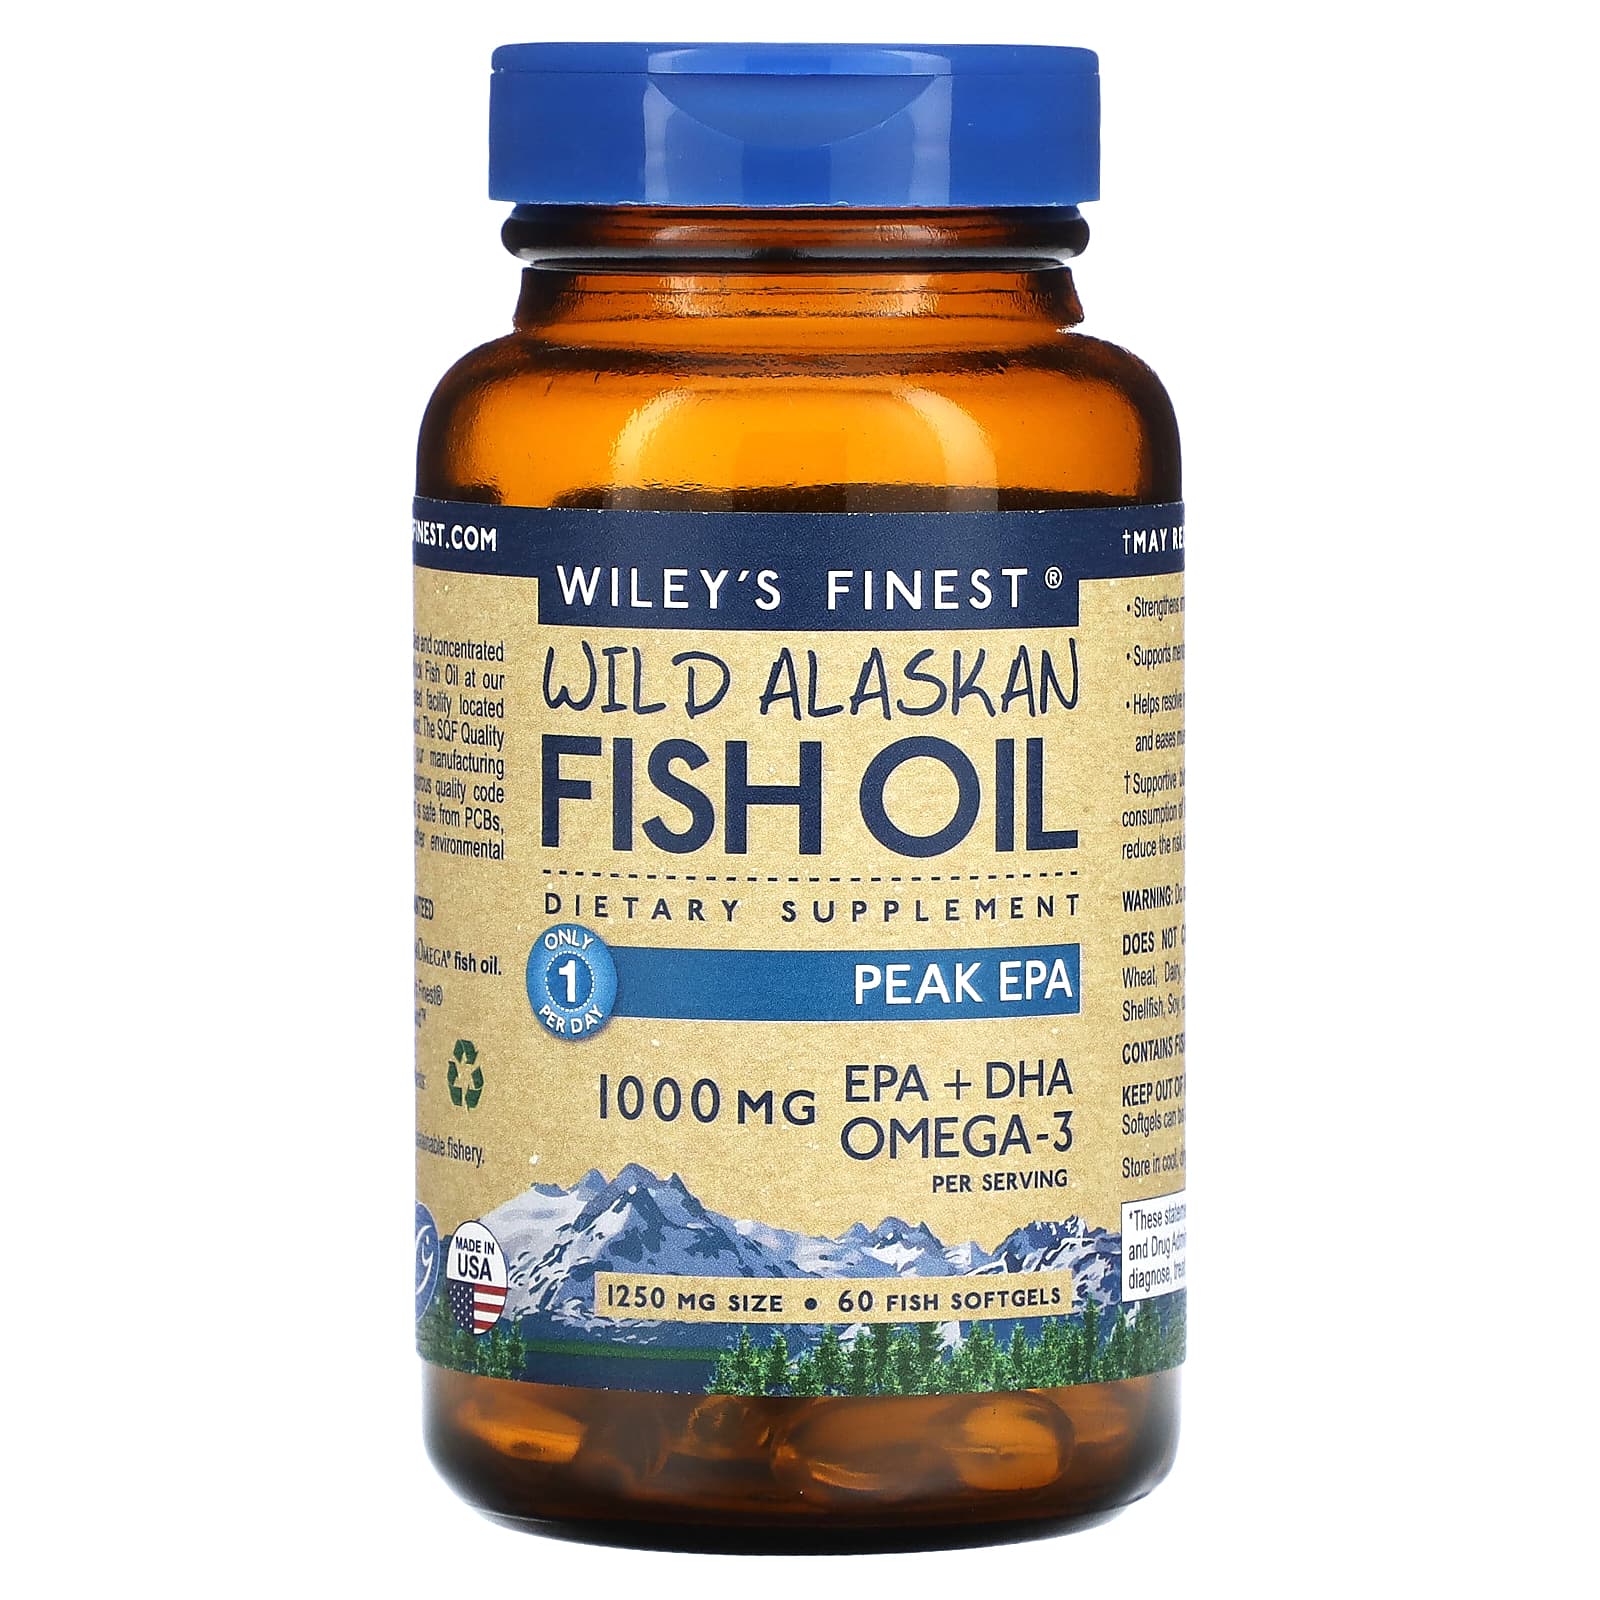  Wiley's Finest Wild Alaskan Fish Oil Peak EPA - Triple